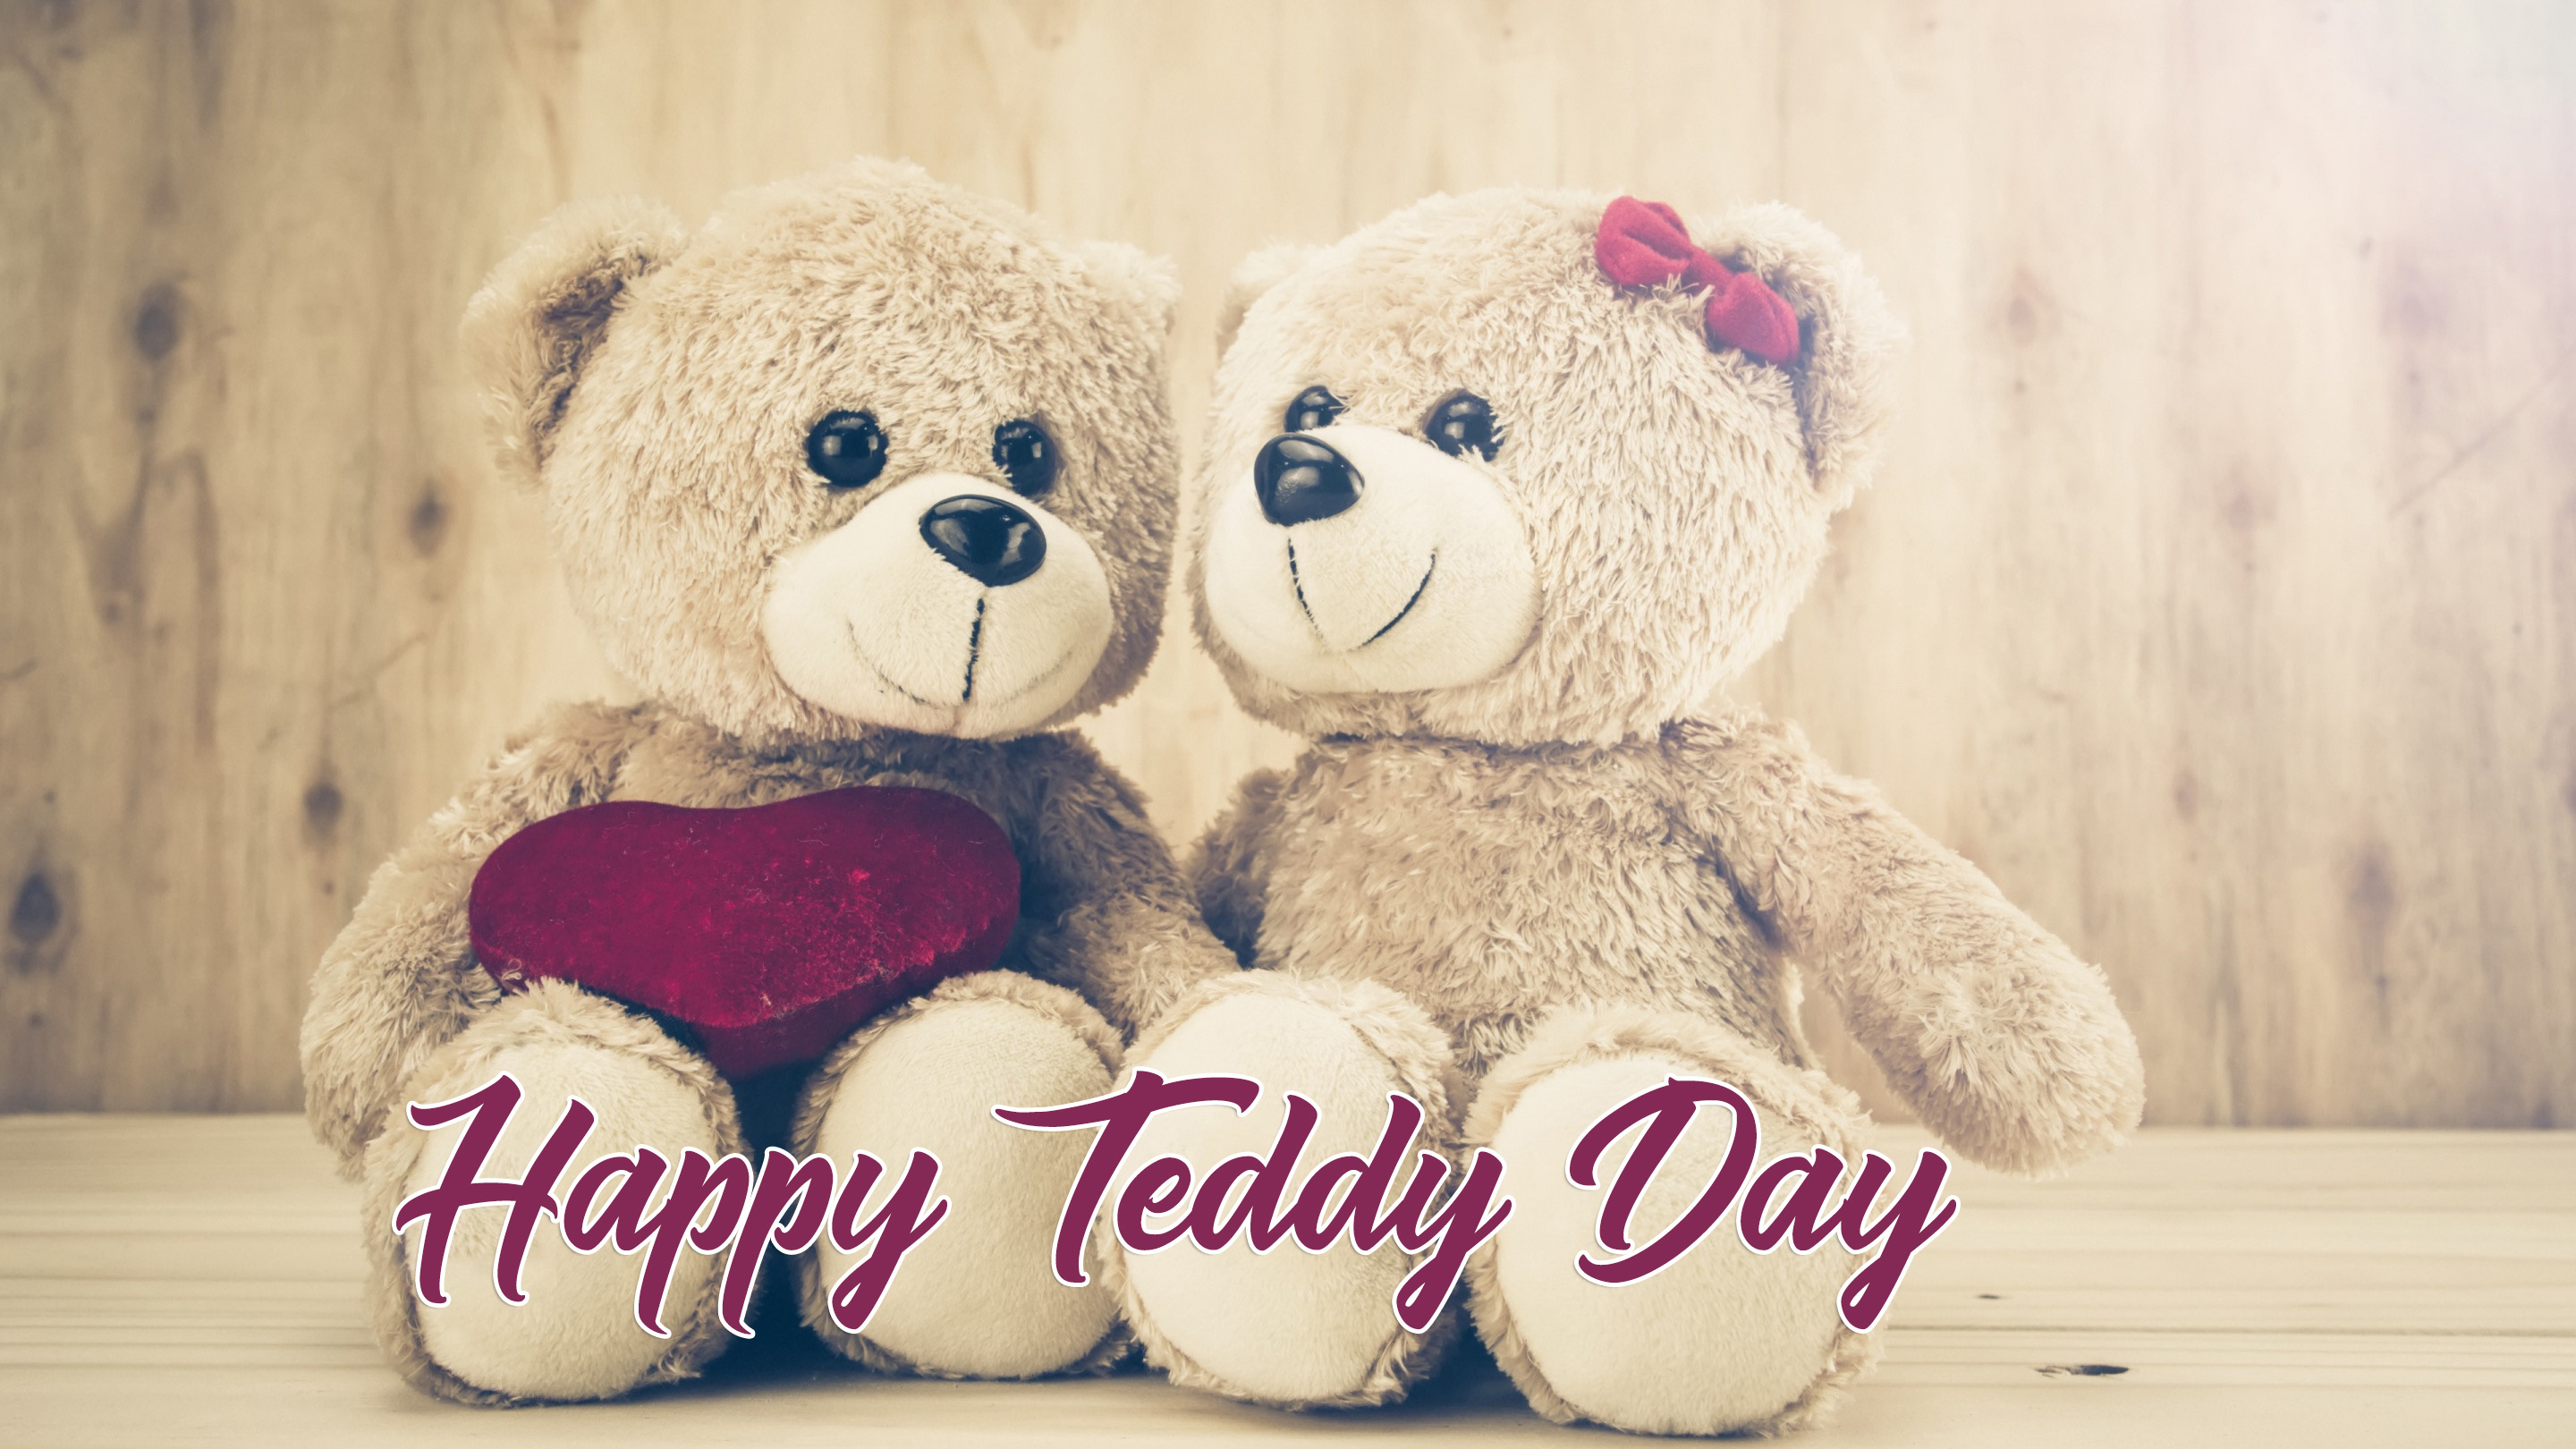 Teddy Day SMS